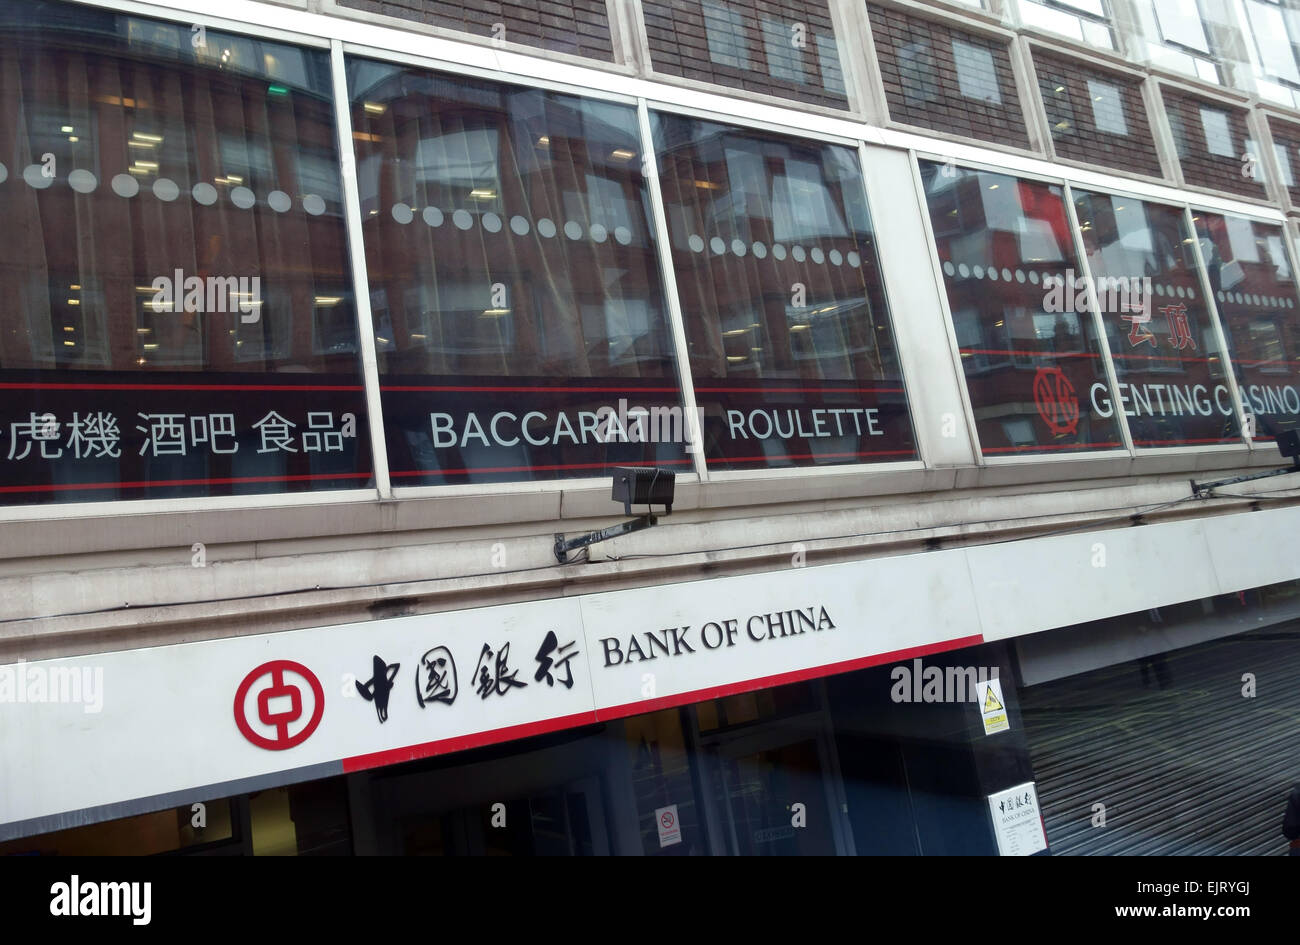 Chinesische Genting Casino, Shaftesbury Avenue, Chinatown, London Stockfoto